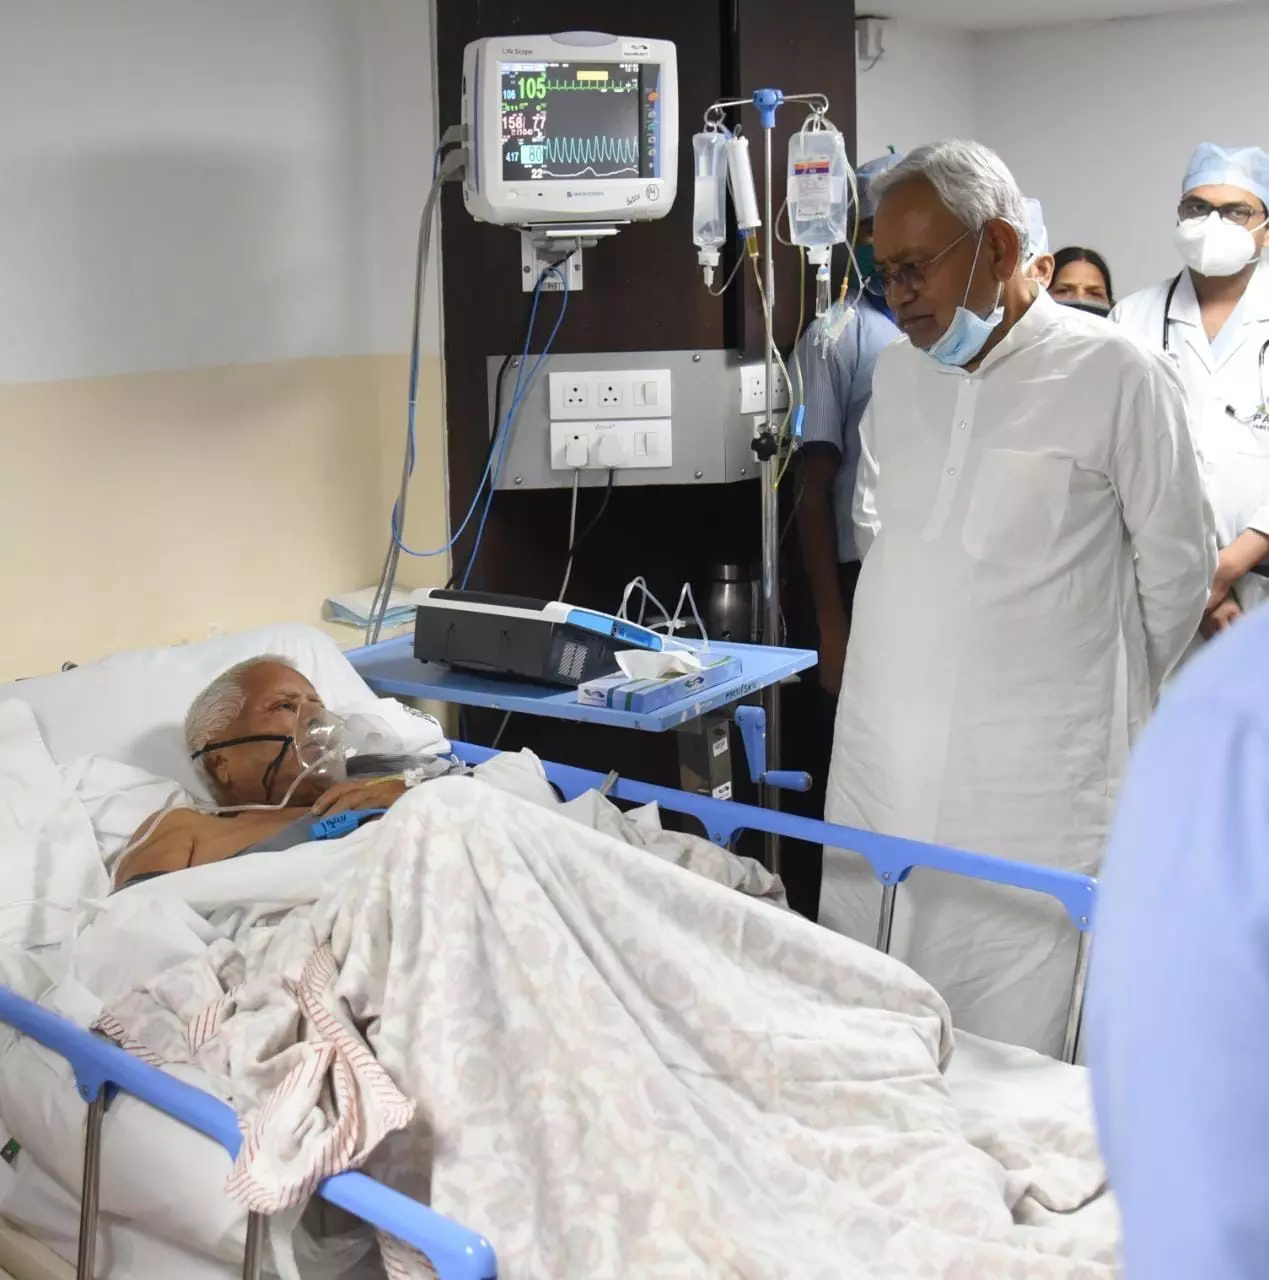 नीतीश कुमार ने अस्पताल जाकर लालूप्रसाद यादव के लिए हालचाल, इलाज के लिए दिल्ली लाए जाएंगे